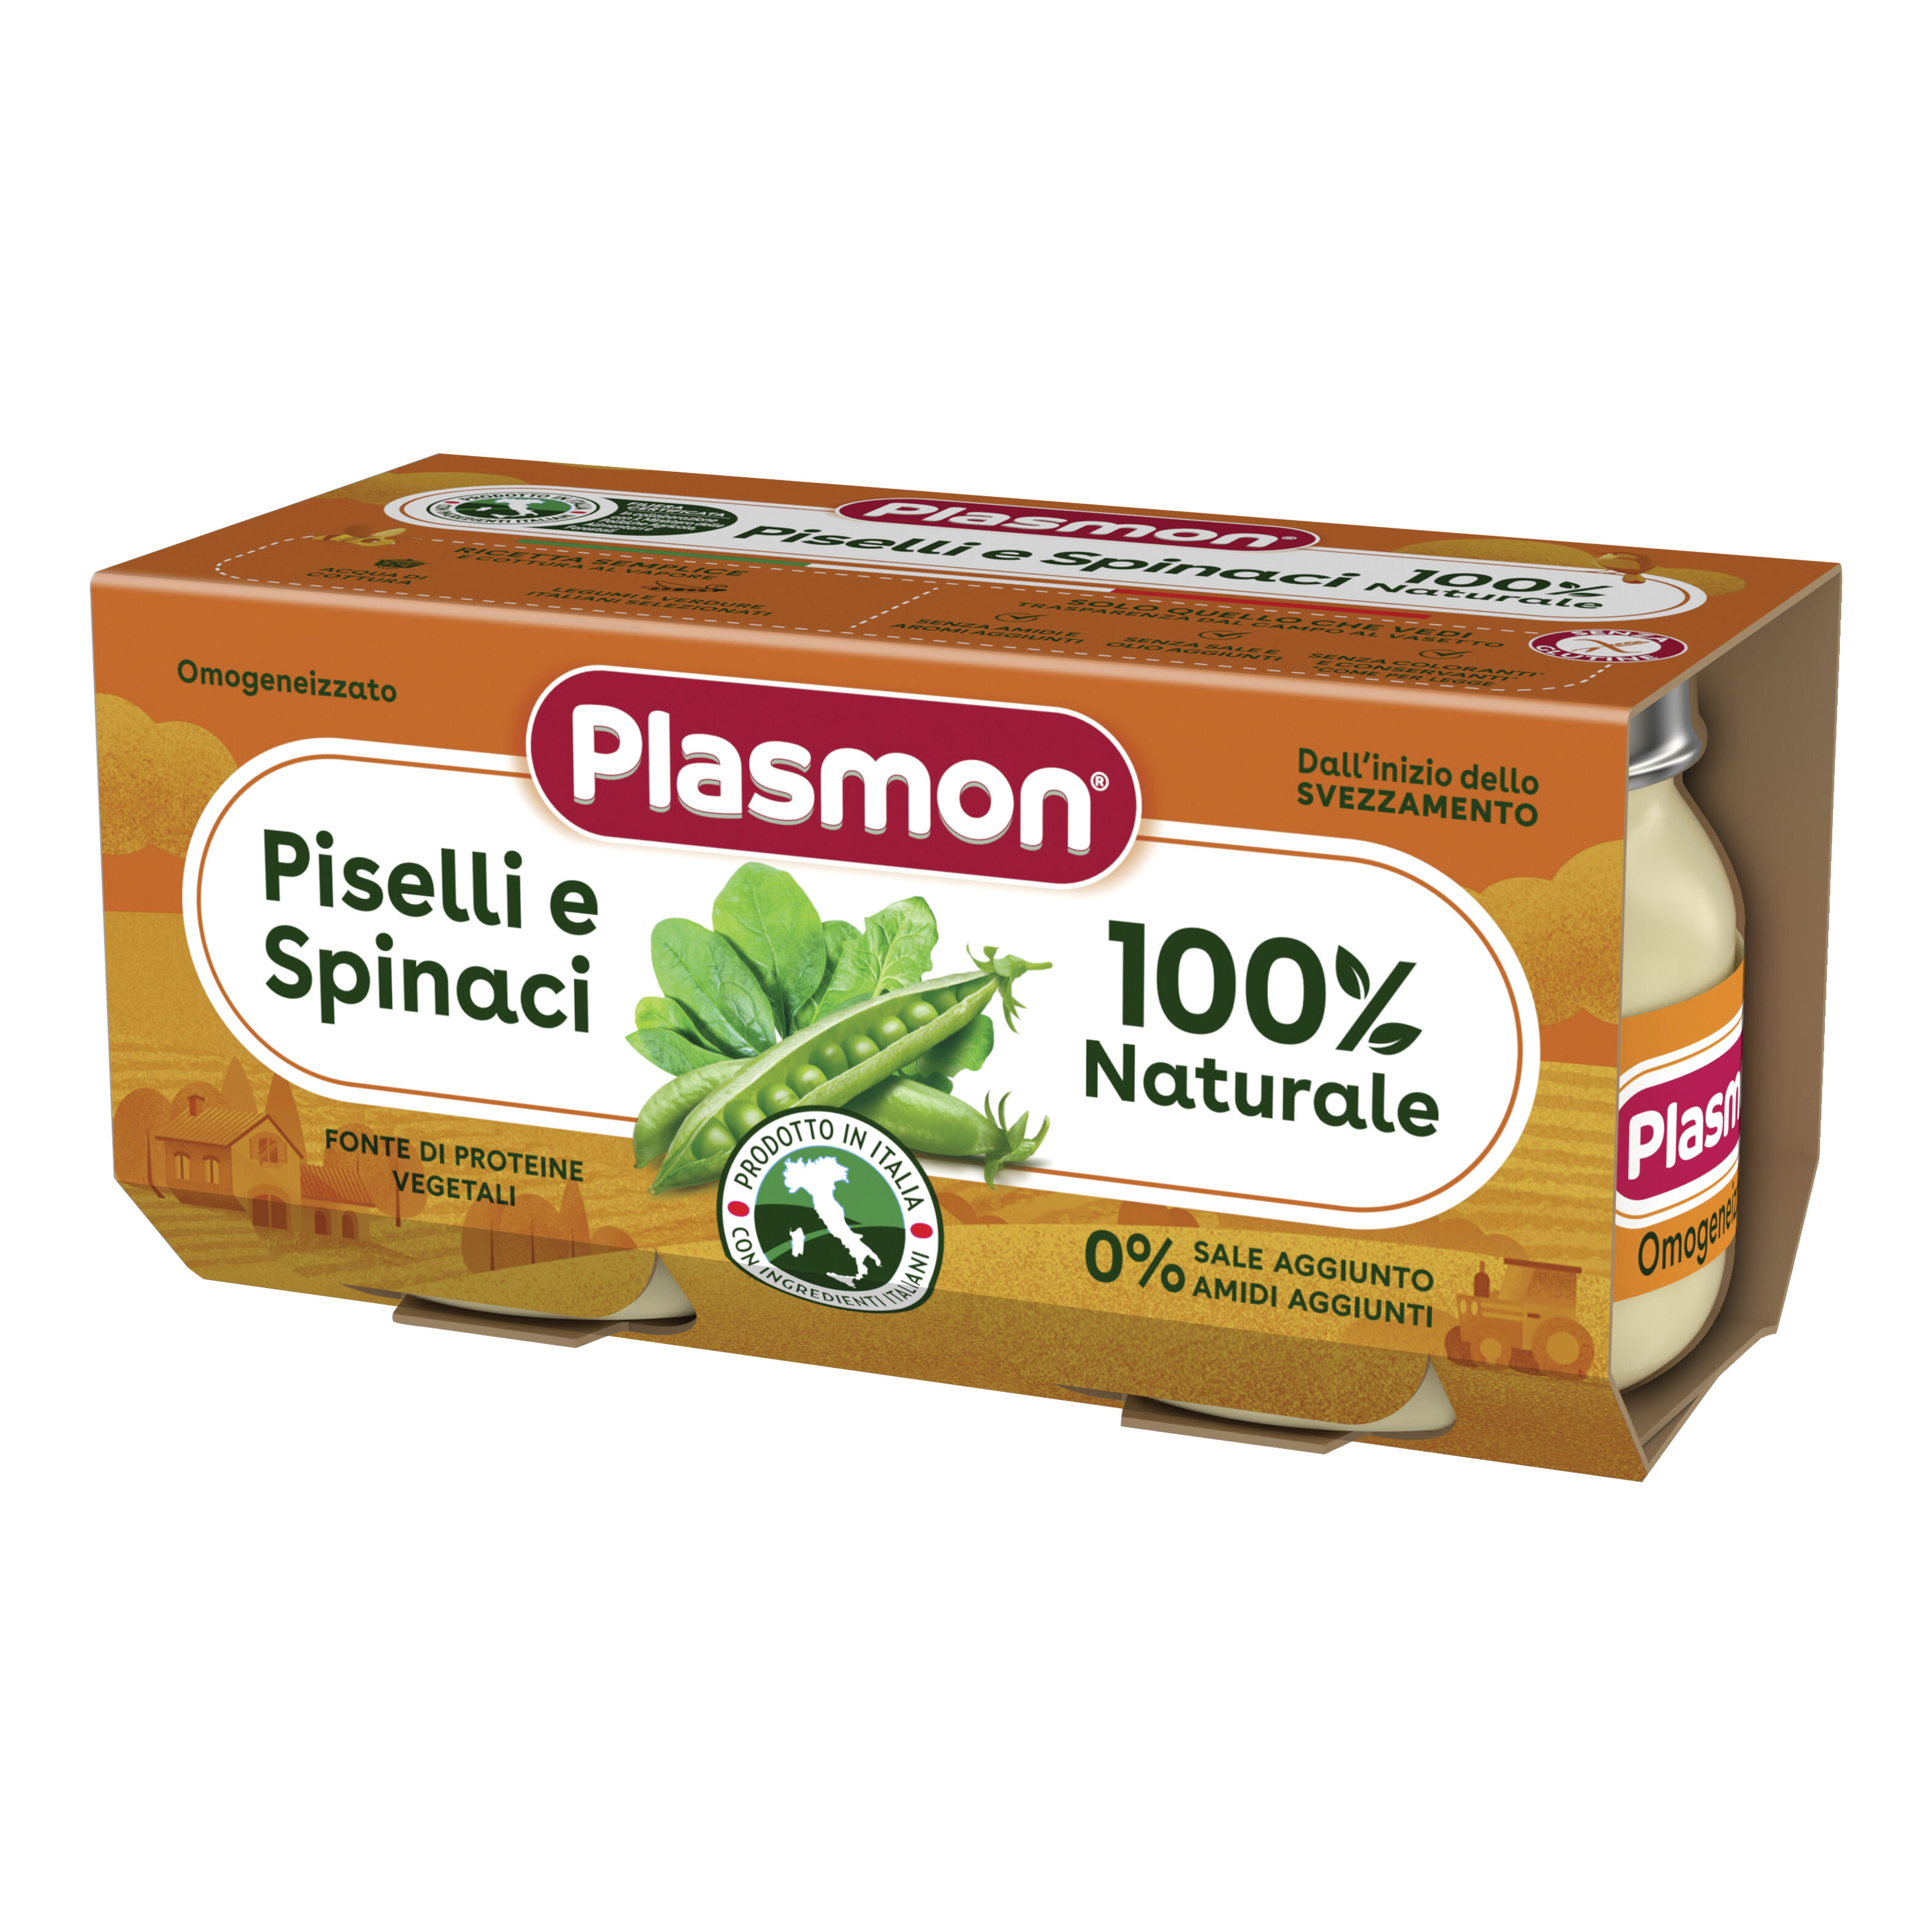 PLASMON omogeneizzato piselli spinaci 2 pezzi da 80 g